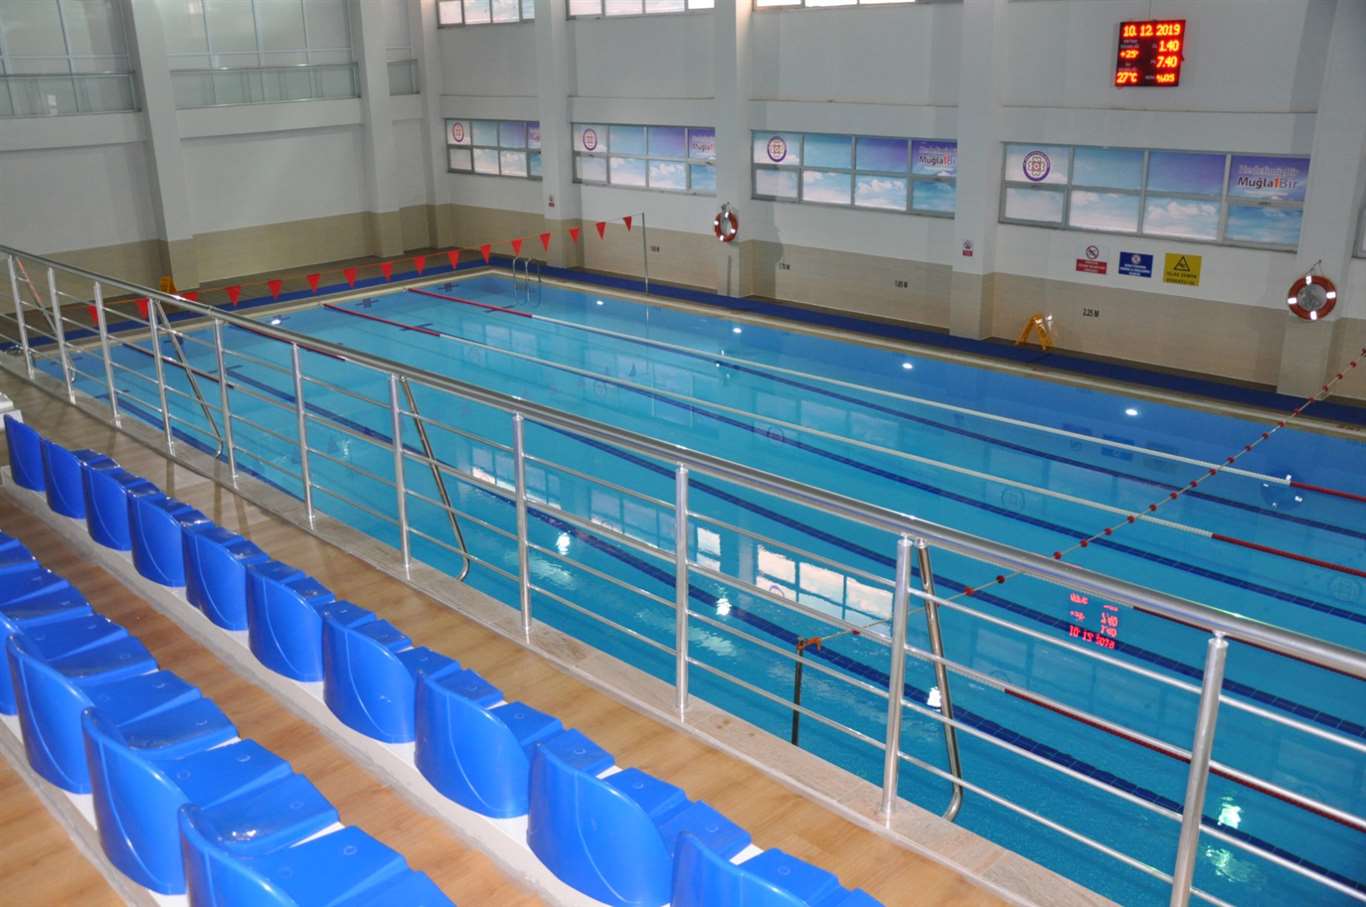    Milas Atatürk Spor Kompleksi Kapalı Yüzme Havuzu hizmete başladı haberi